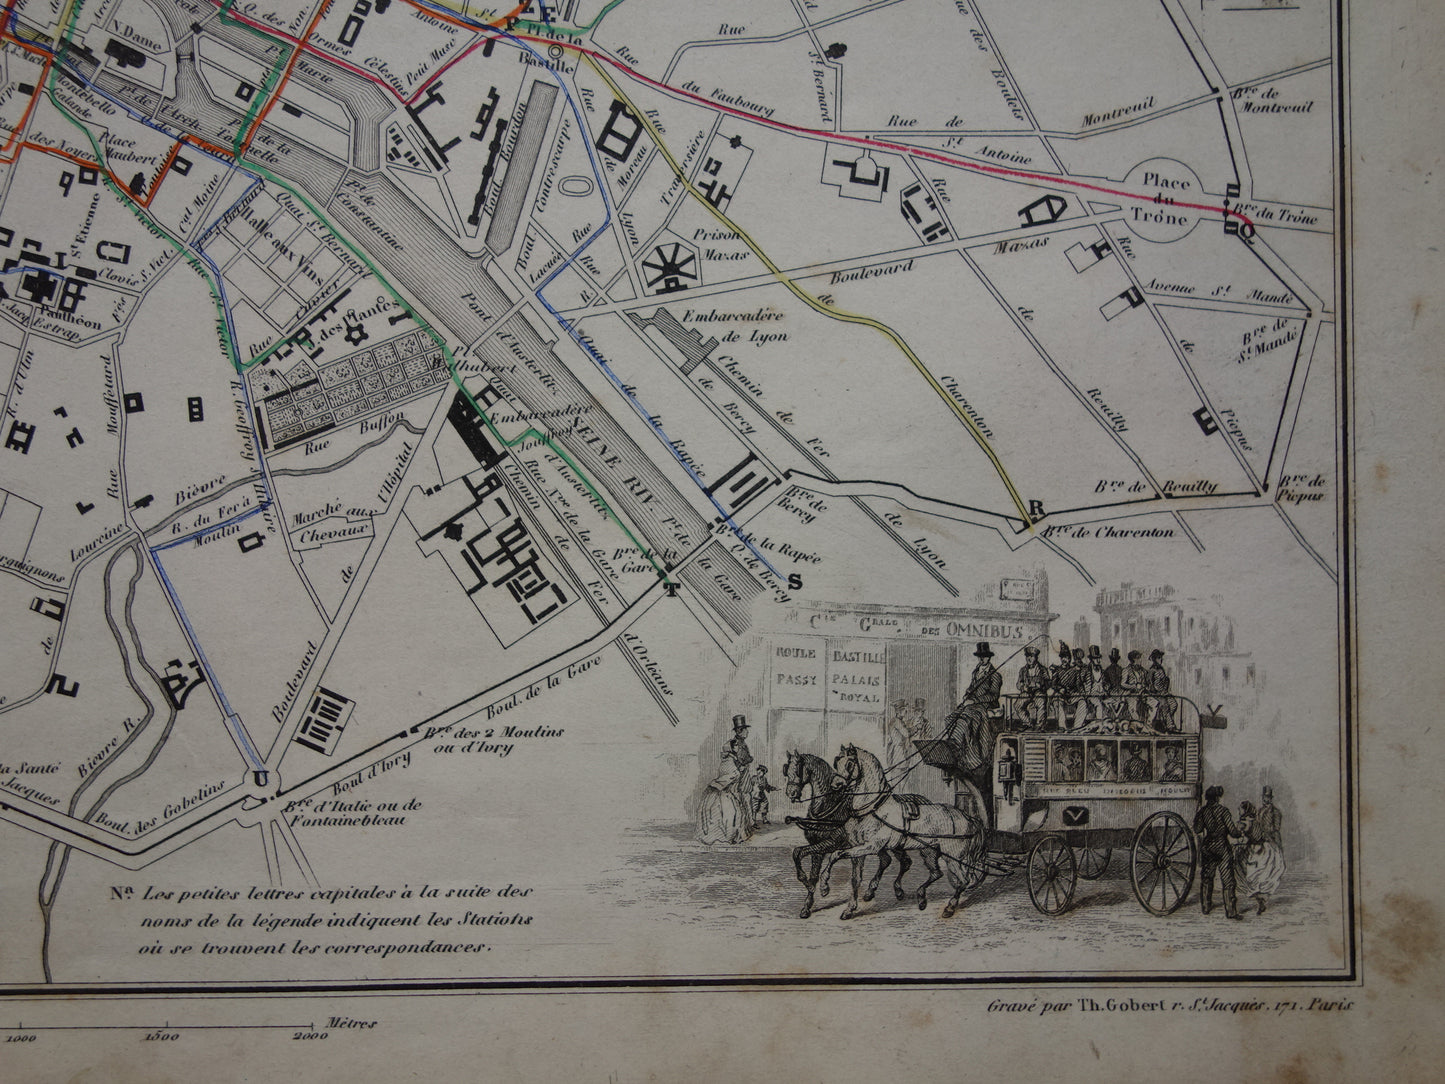 Oude kaart van Parijs met routes van de paardentram / omnibus - zeldzame antieke kaart van Parijs uit 1856 originele vintage plattegrond